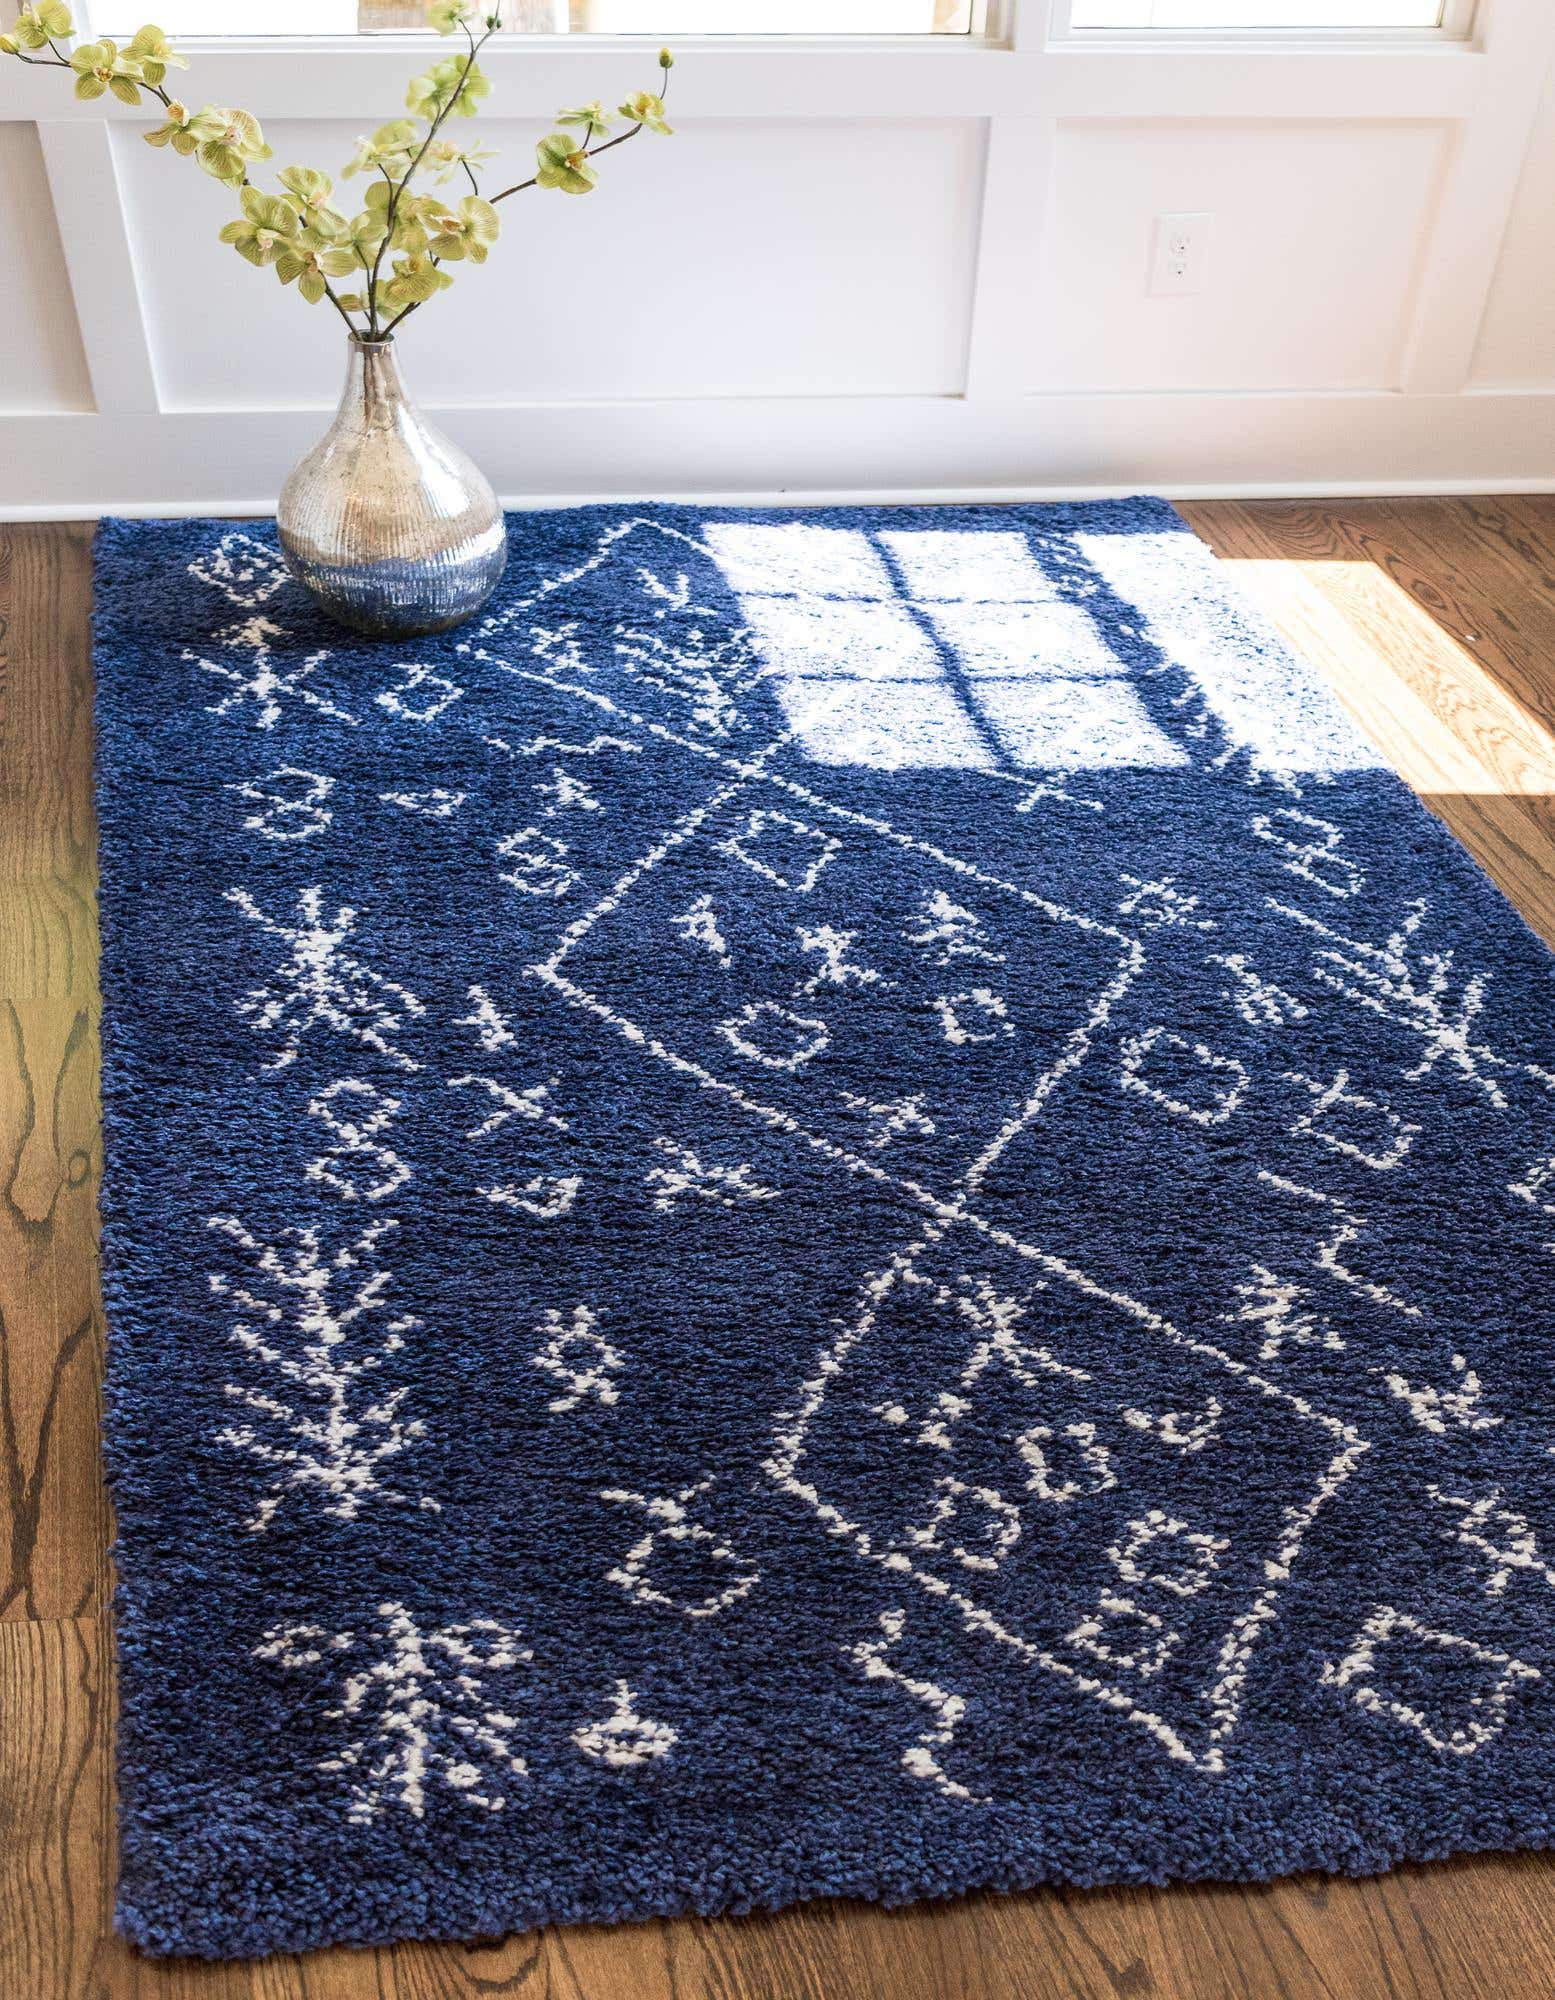 Nếu bạn yêu thích sự sạch sẽ của những gam màu tối nhưng không quá u ám thì tấm thảm lông xù màu xanh lam đậm, họa tiết trắng nổi bật sẽ là một trong những lựa chọn tuyệt vời cho sàn nhà sạch đẹp.